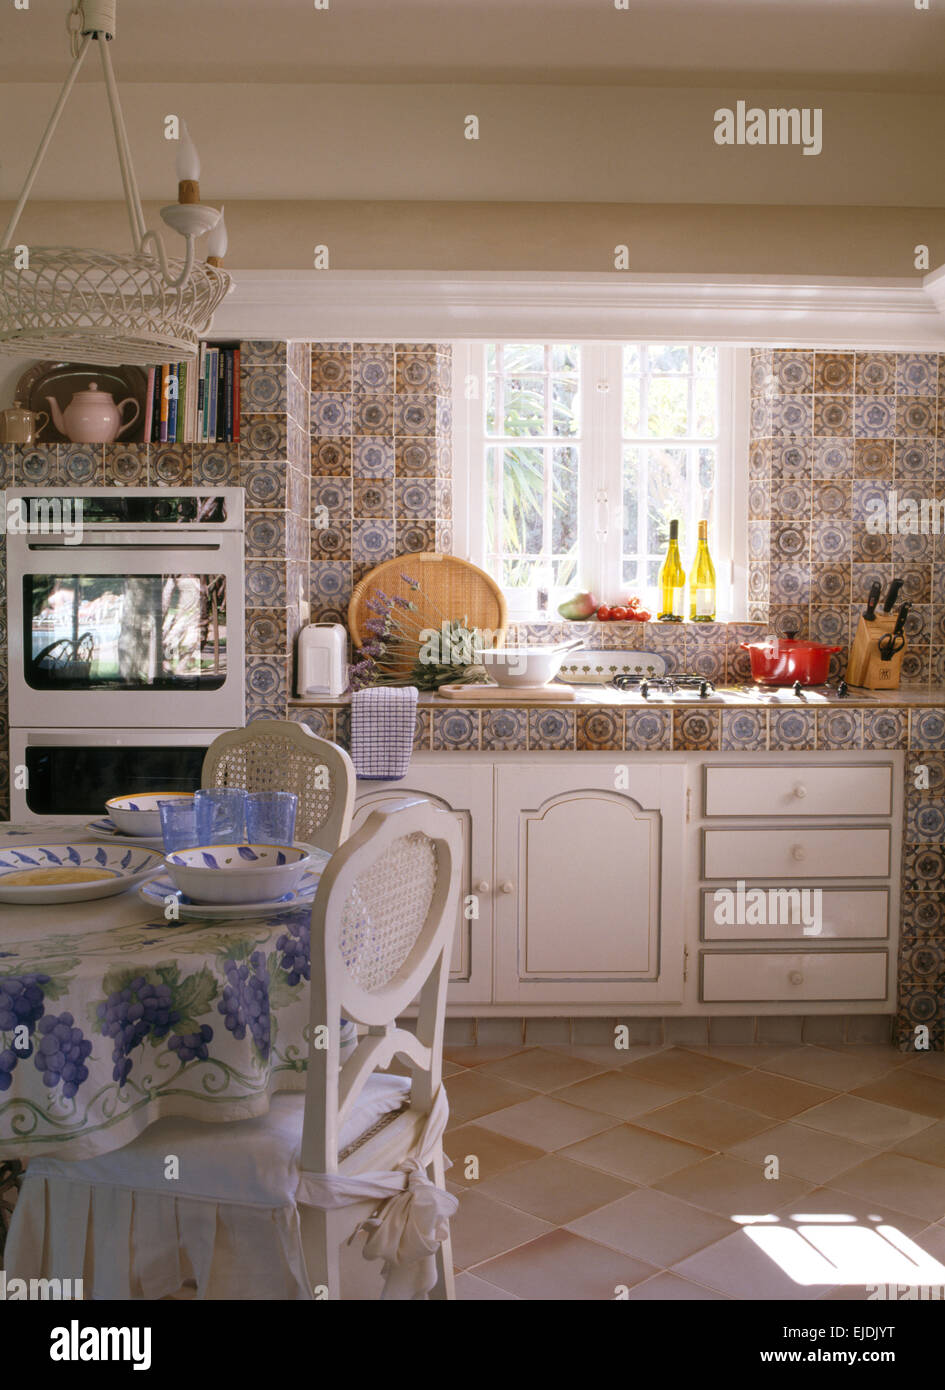 Gemusterte Fliesen und Arbeitsplatte in französische Landküche mit weiß lackierten Stühle am Esstisch Stockfoto